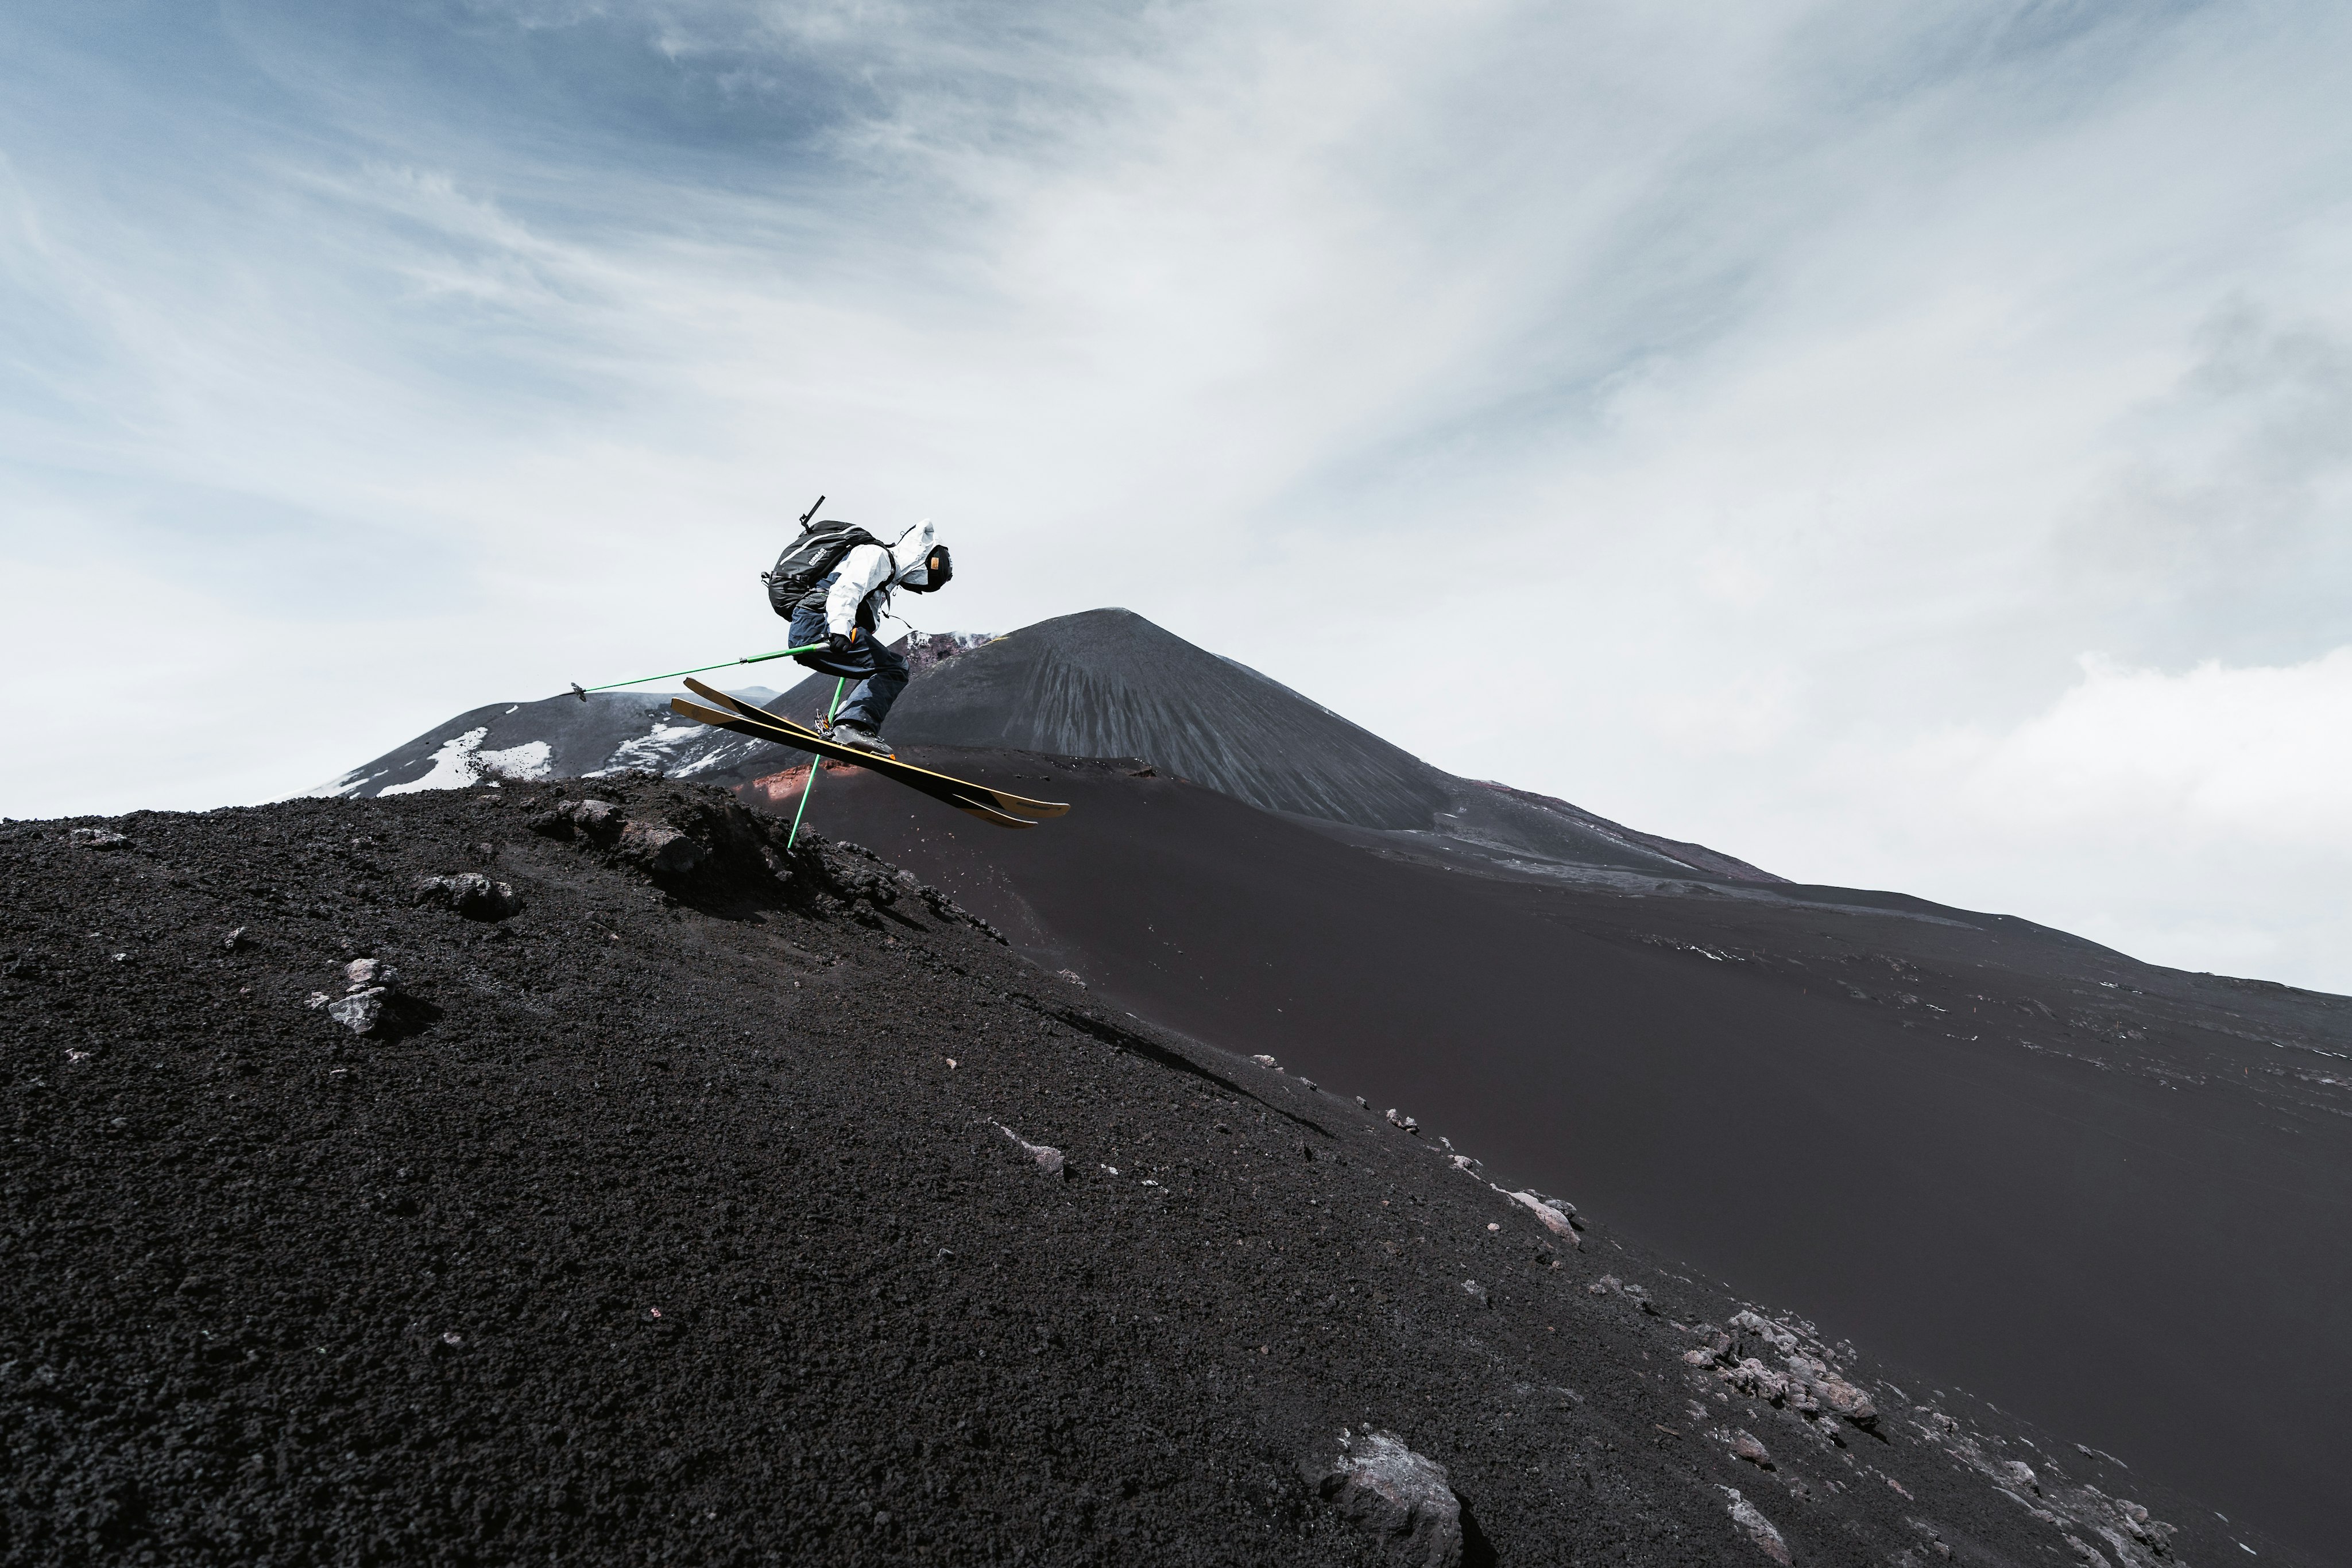 Des skis sur un volcan avec des cendres noires.